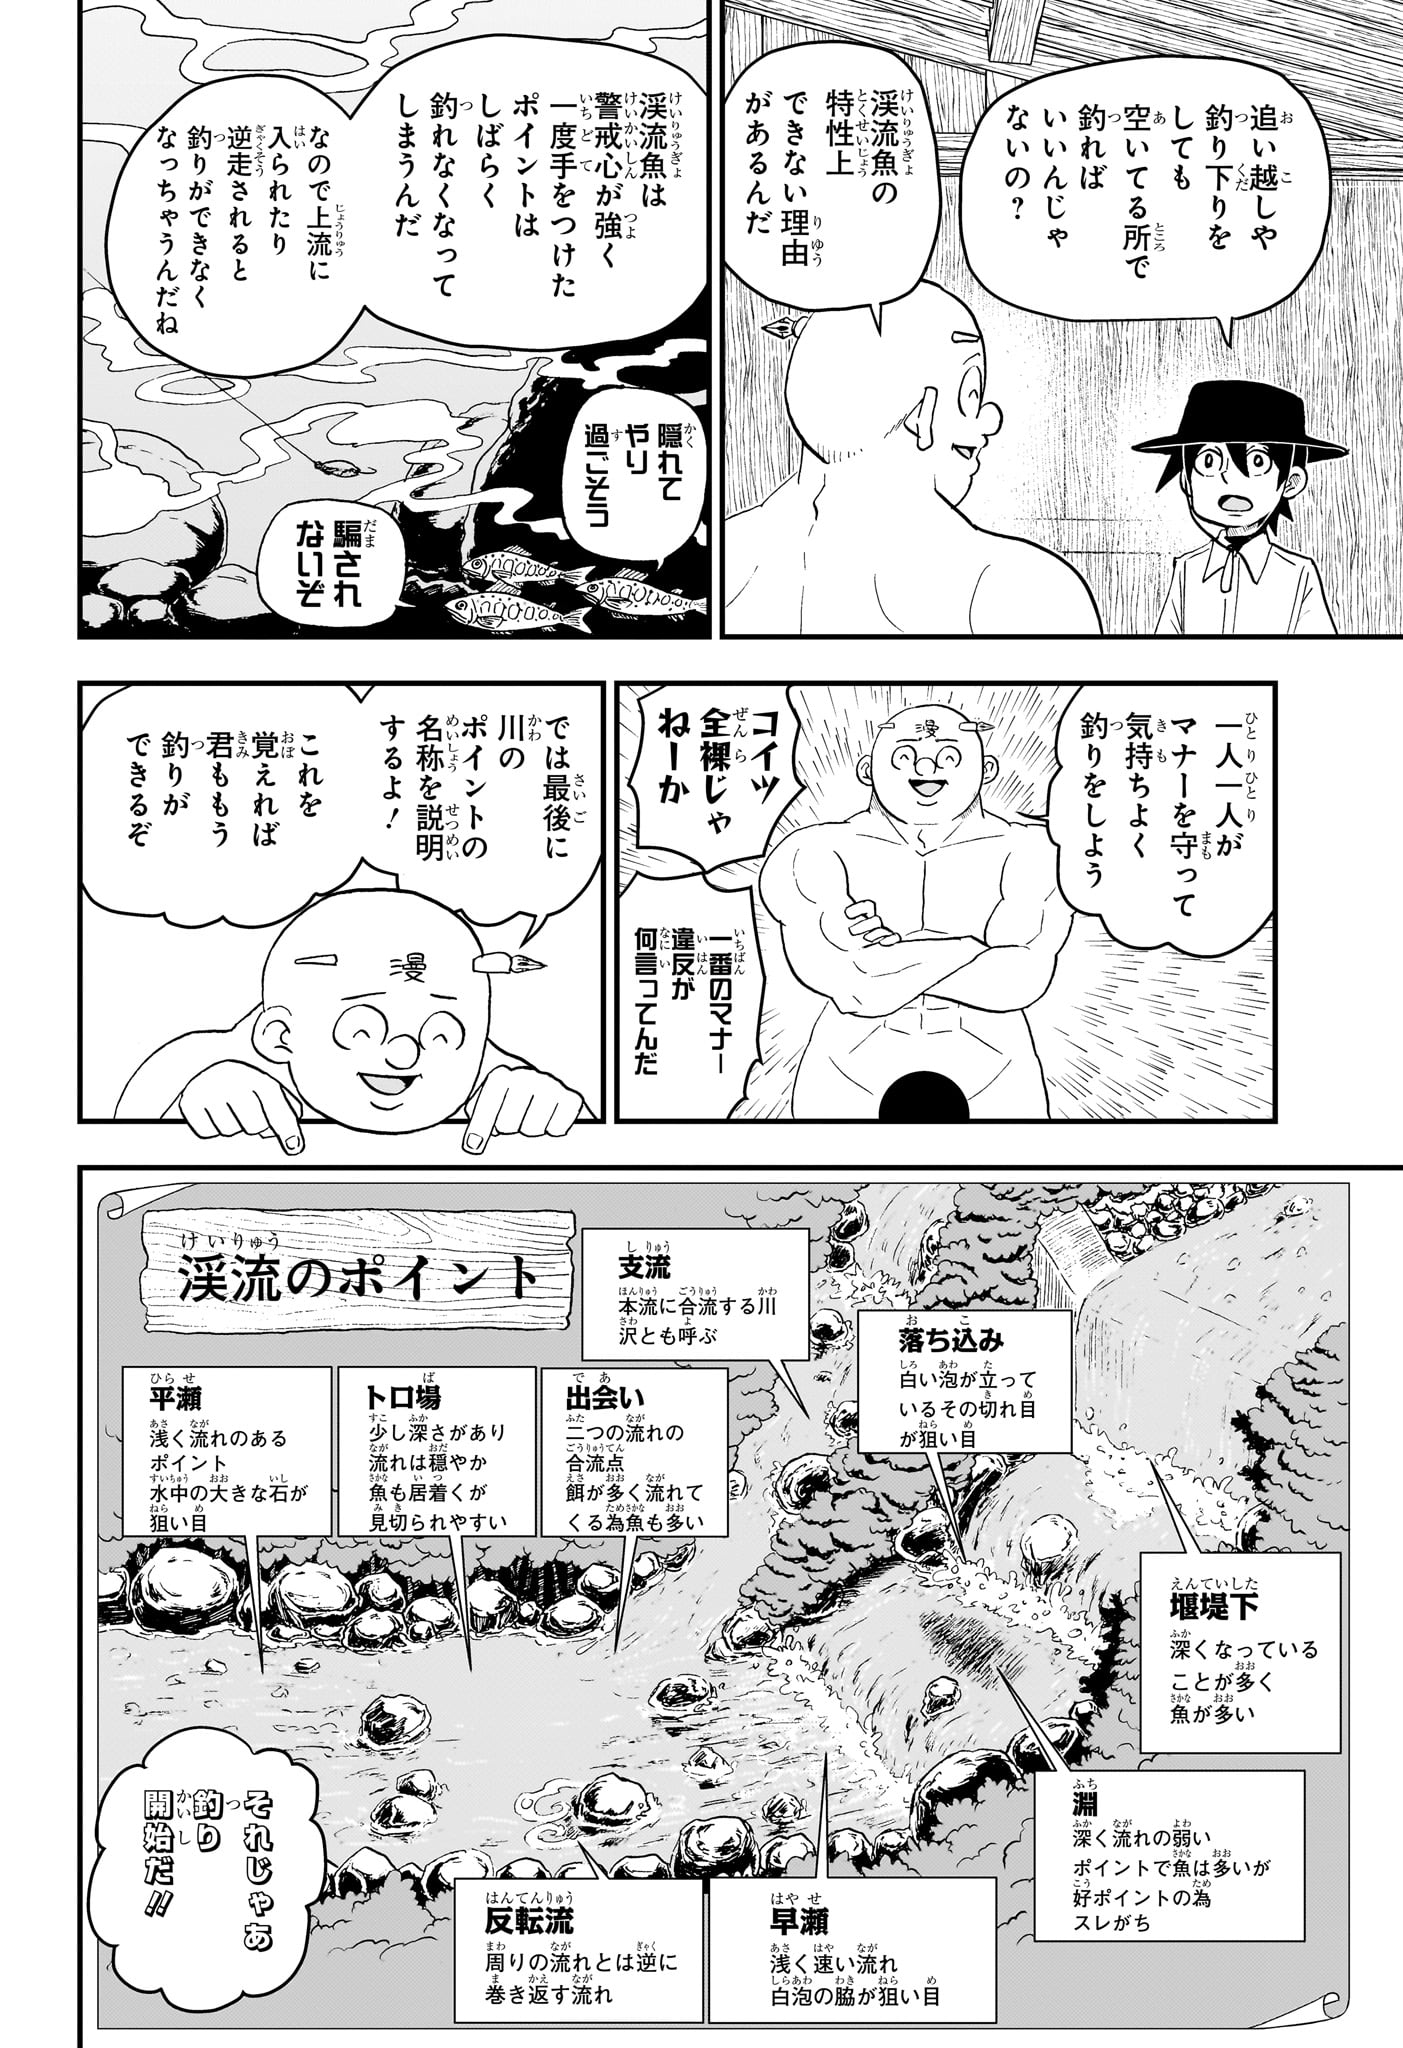 Boku to Roboko - Chapter 187 - Page 8